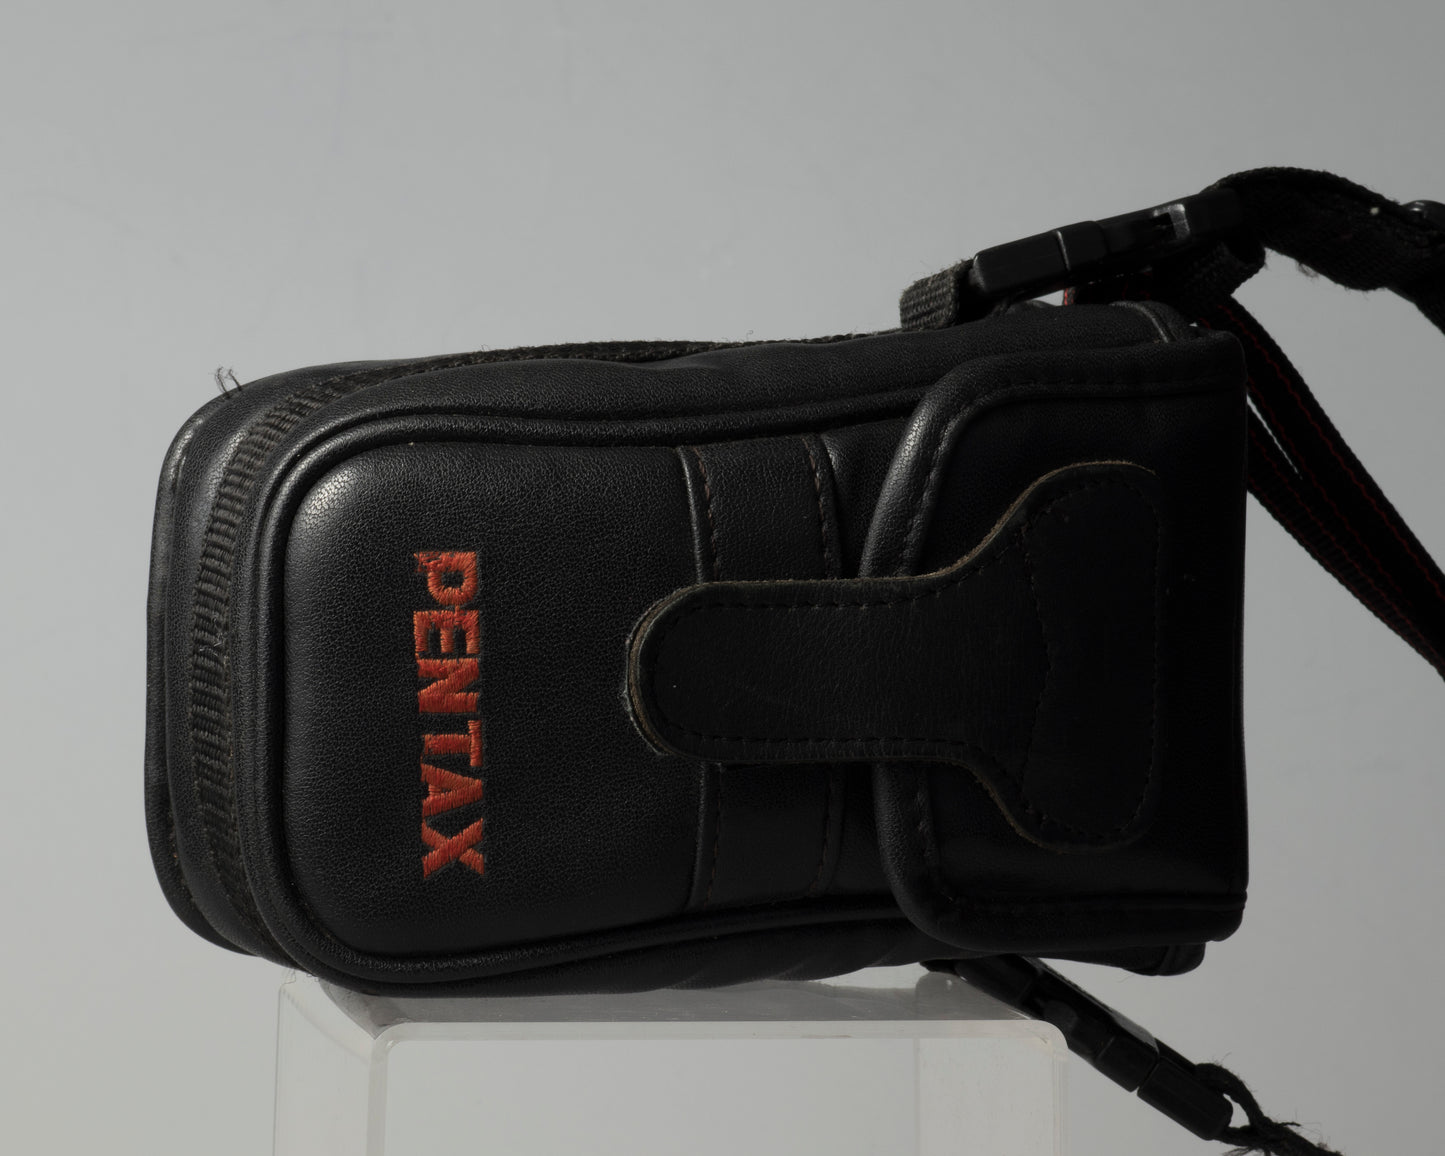 Pentax Zoom-70 Date (IQZoom) Appareil photo 35 mm avec étui (série 578125)